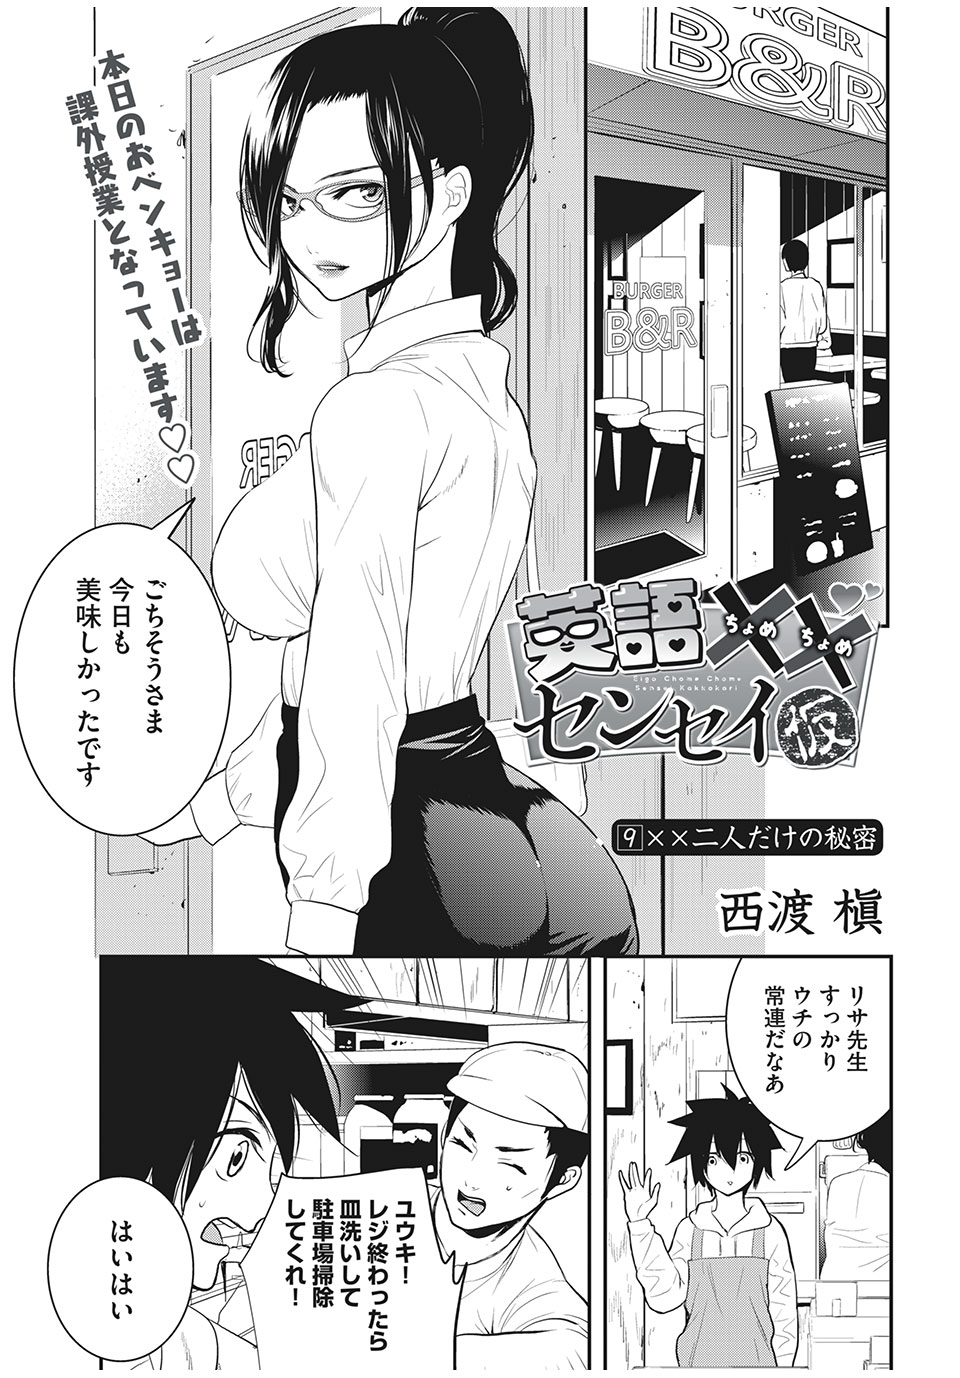 Eigo ×× Sensei - Chapter 9 - Page 1